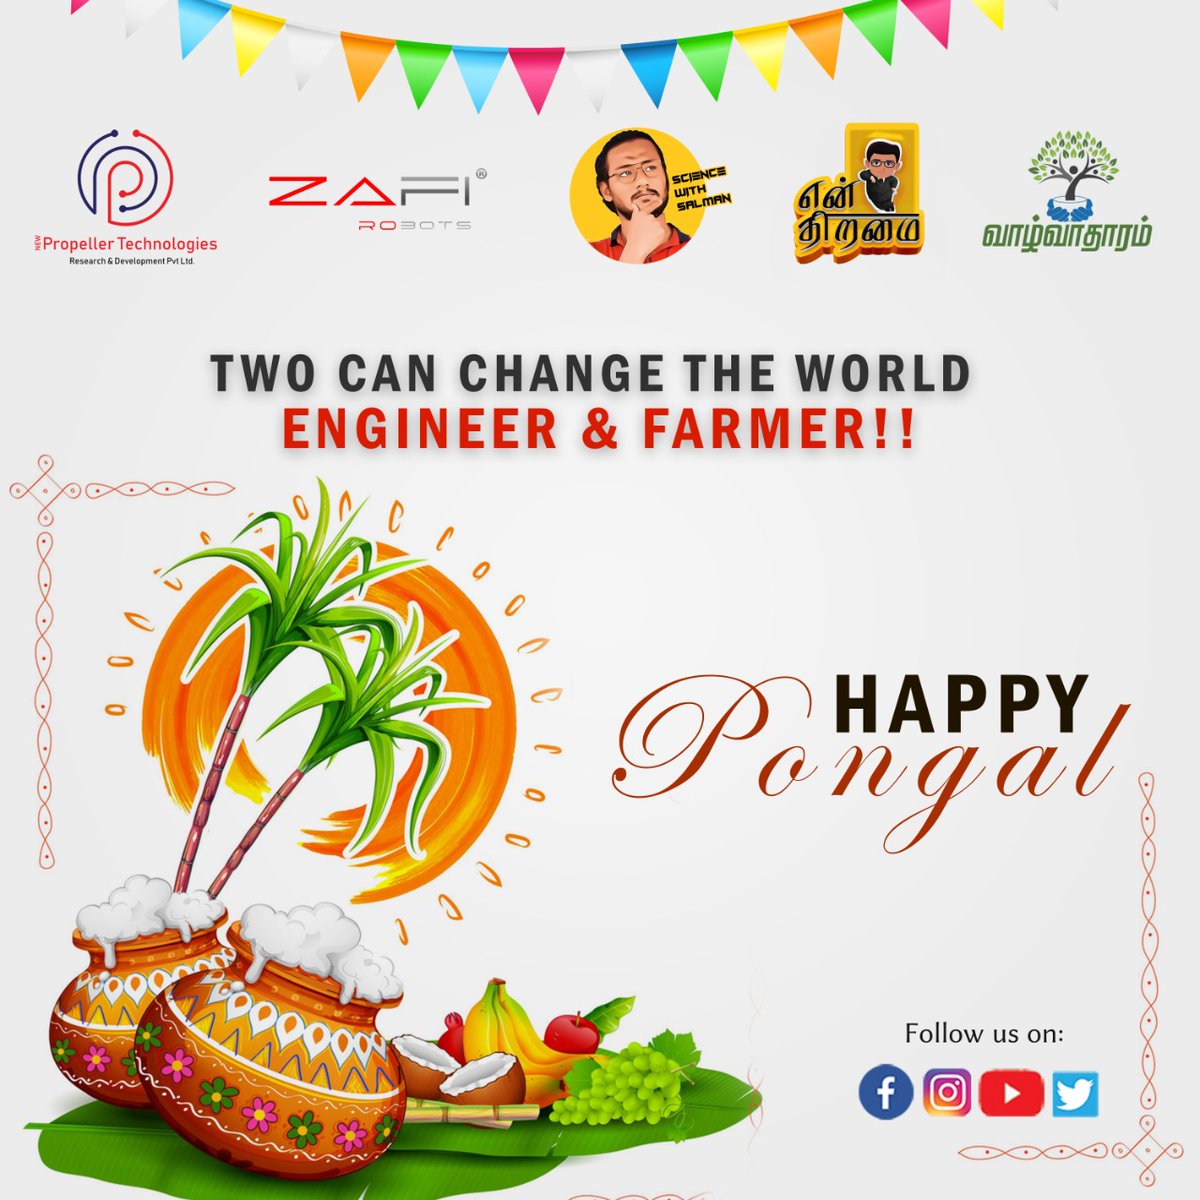 Wishing Everyone a Happy Pongal🎑.

#PropellerTechnologies #ZafiRobots #enthiramai #Vazhvadharam #Engineer #Farmer #ThaiThirunaal #ThamizharThirunaal #Jallikattu